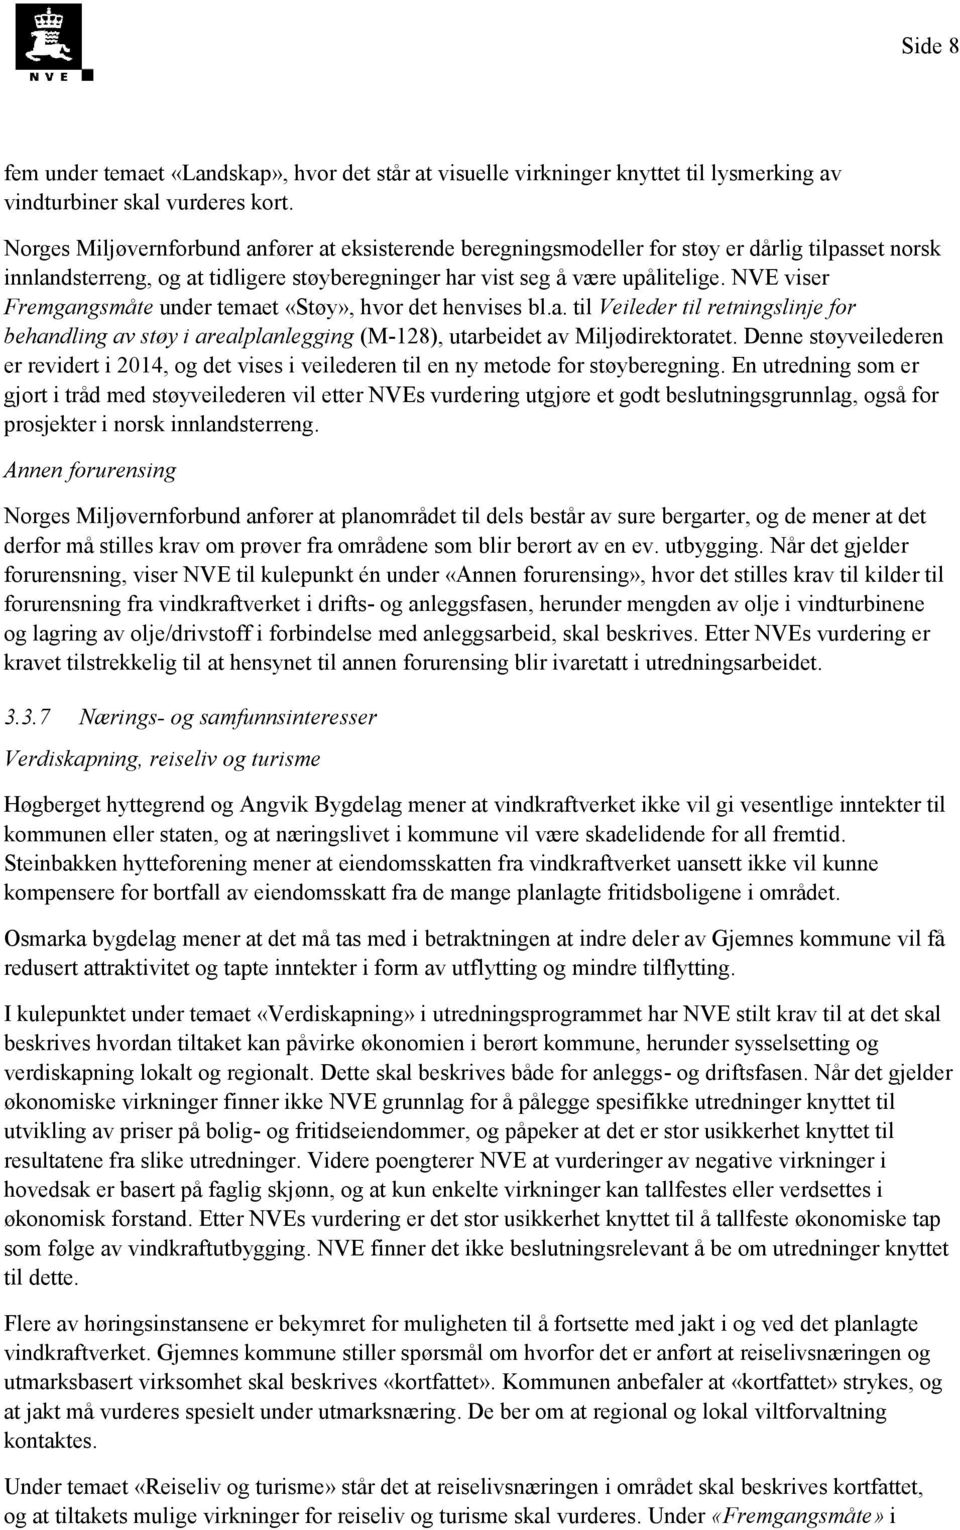 NVE viser Fremgangsmåte under temaet «Støy», hvor det henvises bl.a. til Veileder til retningslinje for behandling av støy i arealplanlegging (M-128), utarbeidet av Miljødirektoratet.